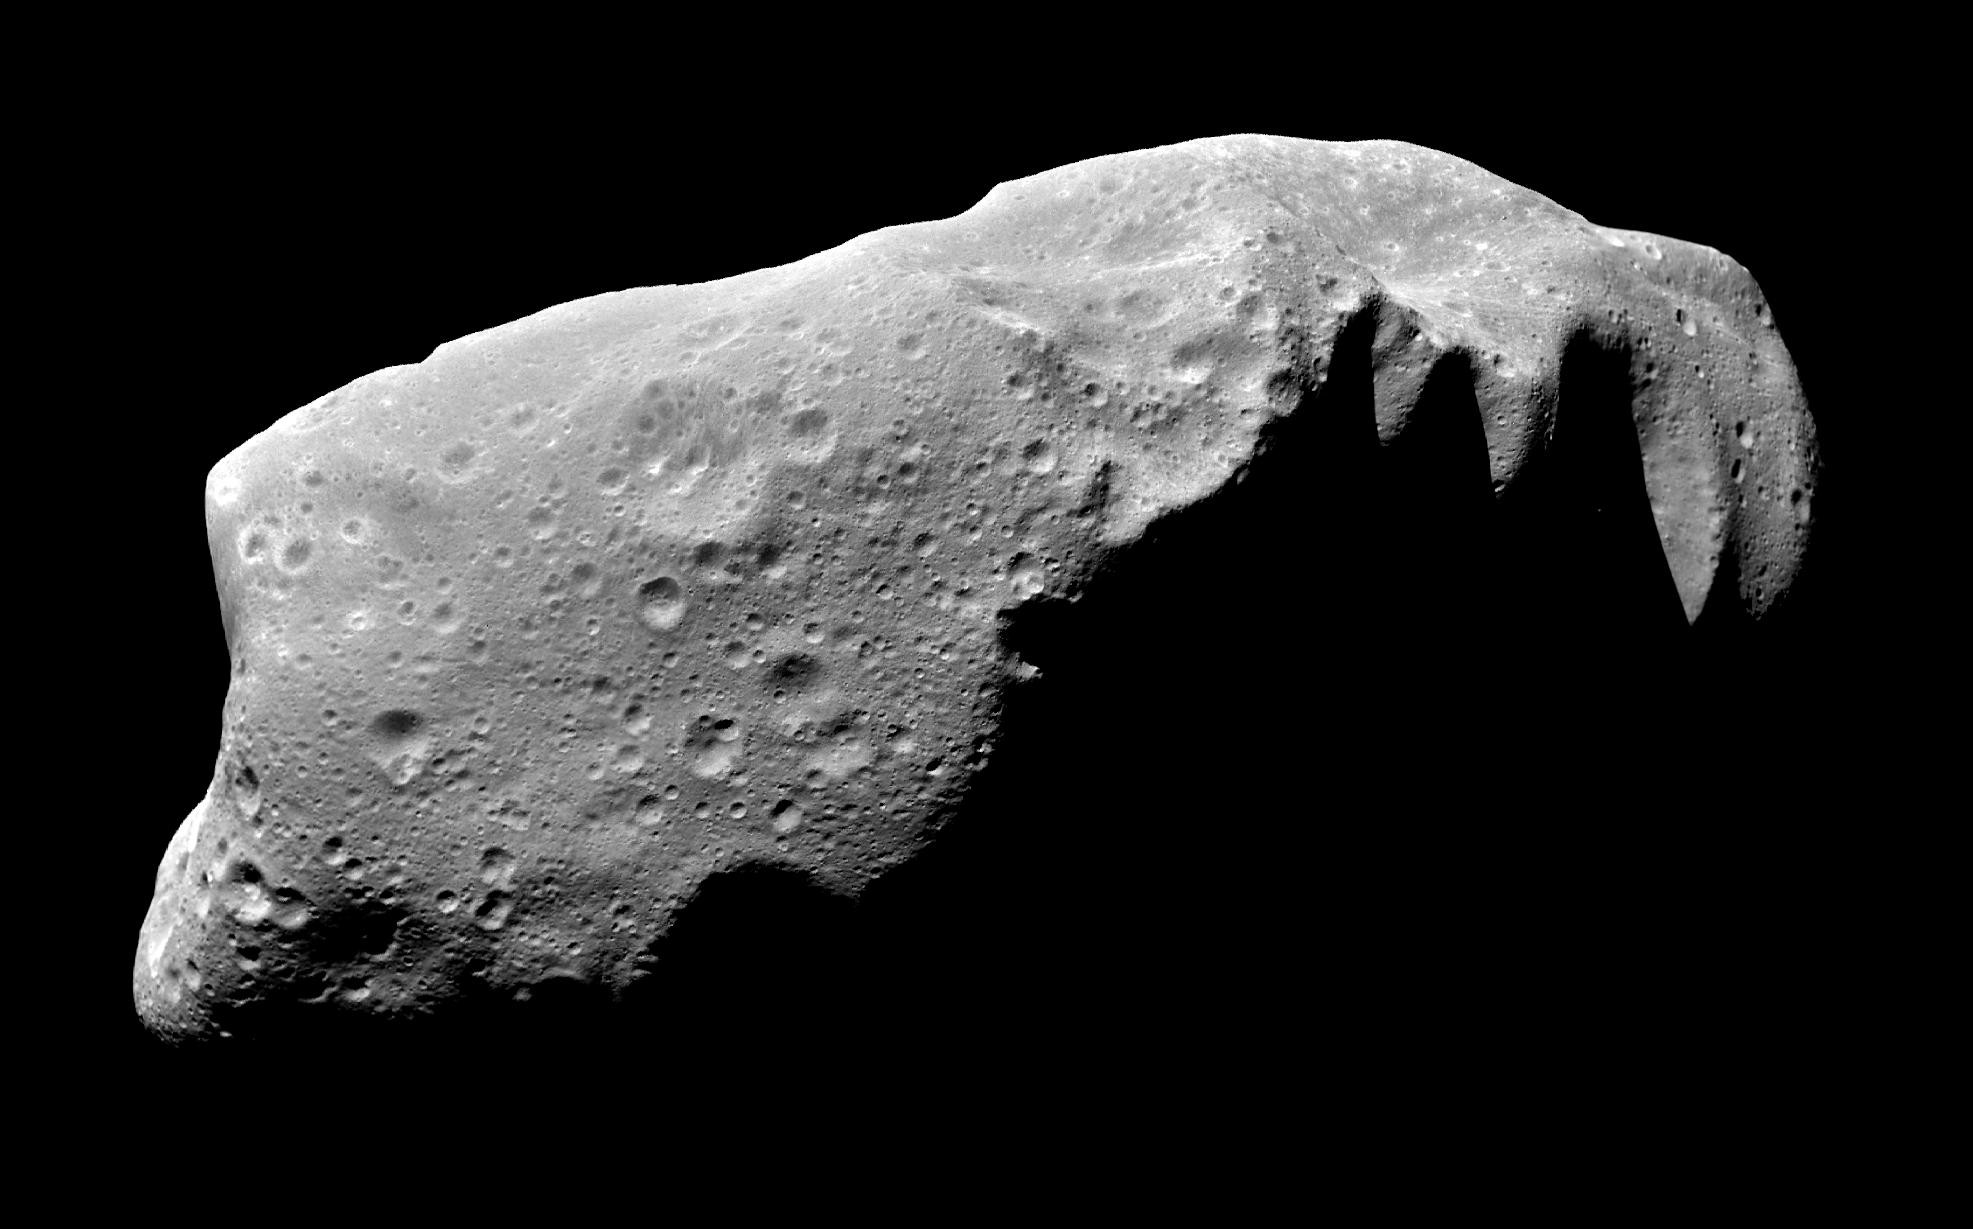 L'astéroïde 243 Ida tel qu'il a été photographié en 1993 par la Nasa lors de son survol par la sonde Galileo. Il ne s'agit heureusement pas d'un géocroiseur et il fait partie de la ceinture principale d'astéroïdes. © Nasa